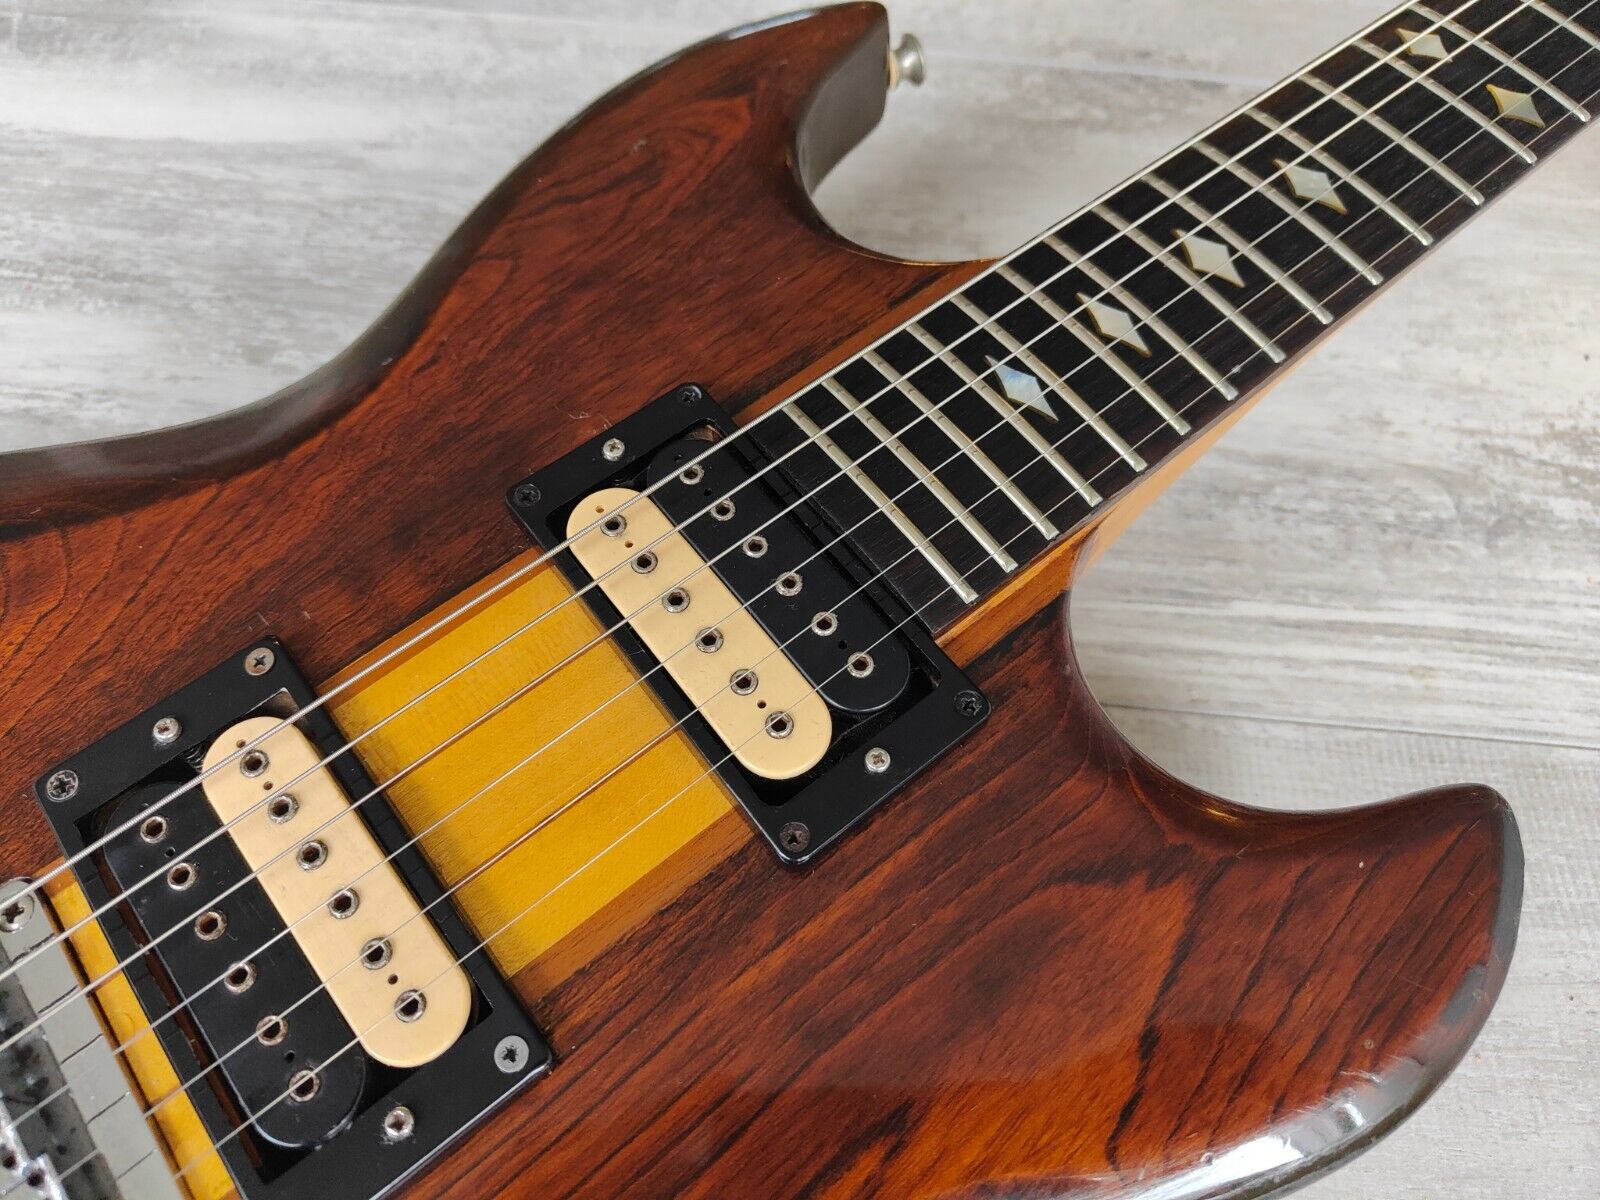 1980 Aria Pro II Japan (Matsumoku) TS-600 Neckthrough Vintage Guitar (Brown)